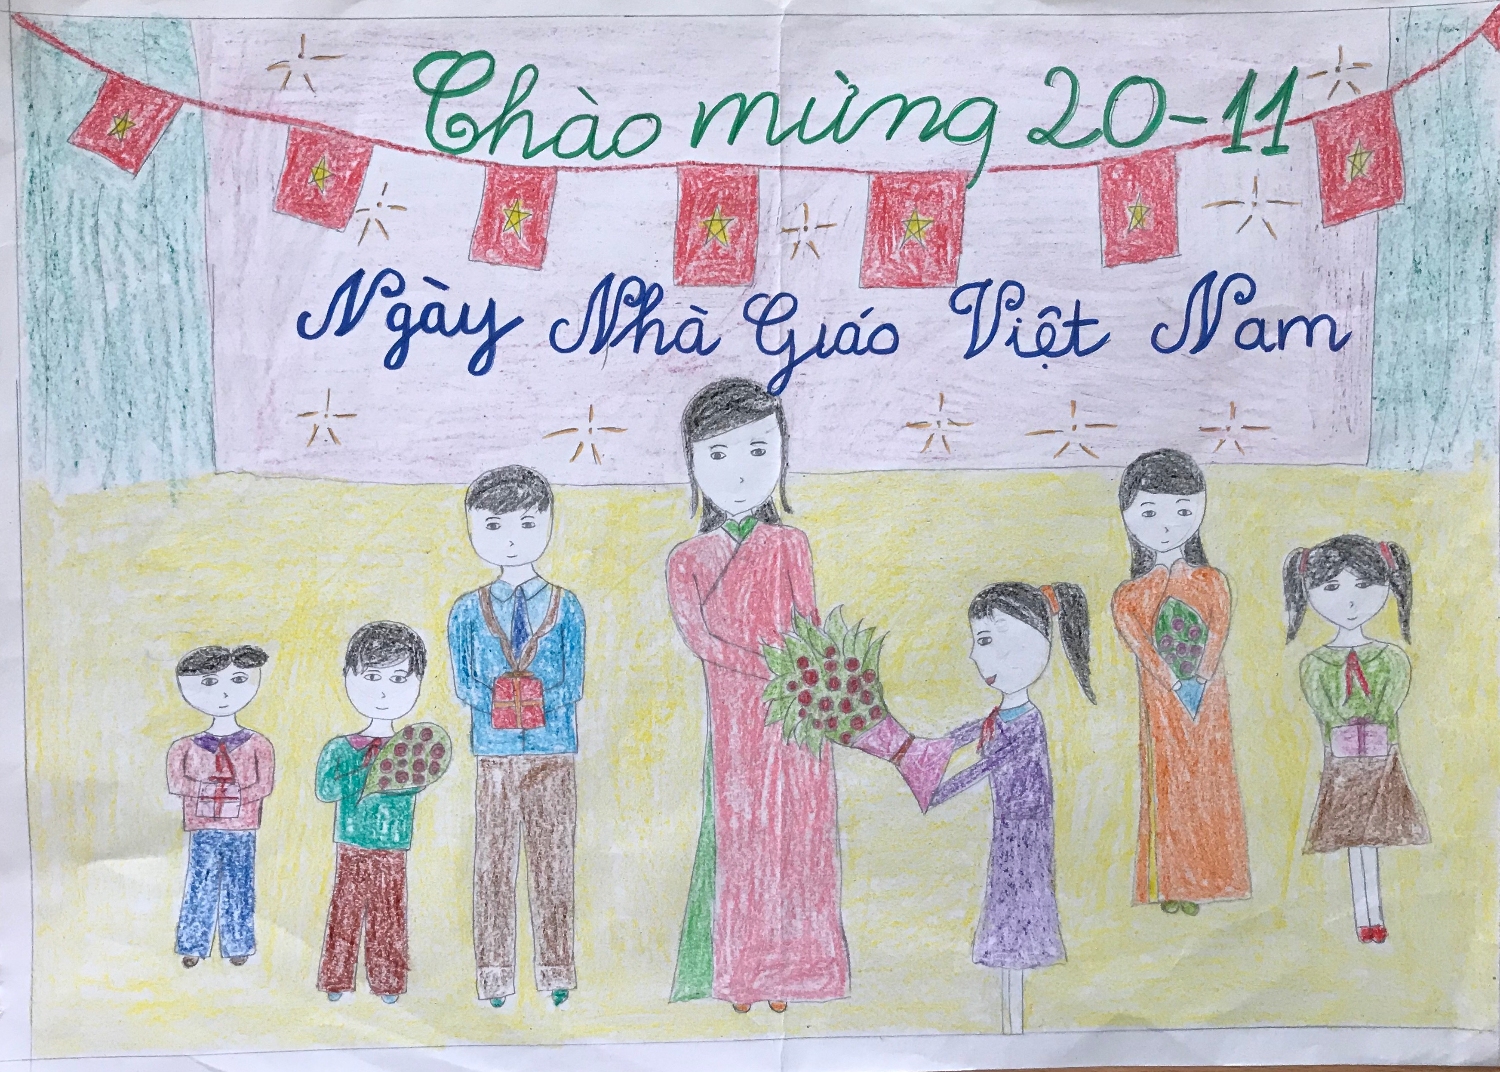 35 năm kỷ niệm Ngày Nhà Giáo Việt Nam - một dấu mốc đáng nhớ. Cùng nhau, hãy đọc tin bài này và nhớ về những thầy cô giáo đã hi sinh tất cả để dạy dỗ chúng ta. Họ là những người hùng, người đã khơi nguồn năng lượng và động lực cho chúng ta và để lại những dấu ấn đẹp suốt cả đời.